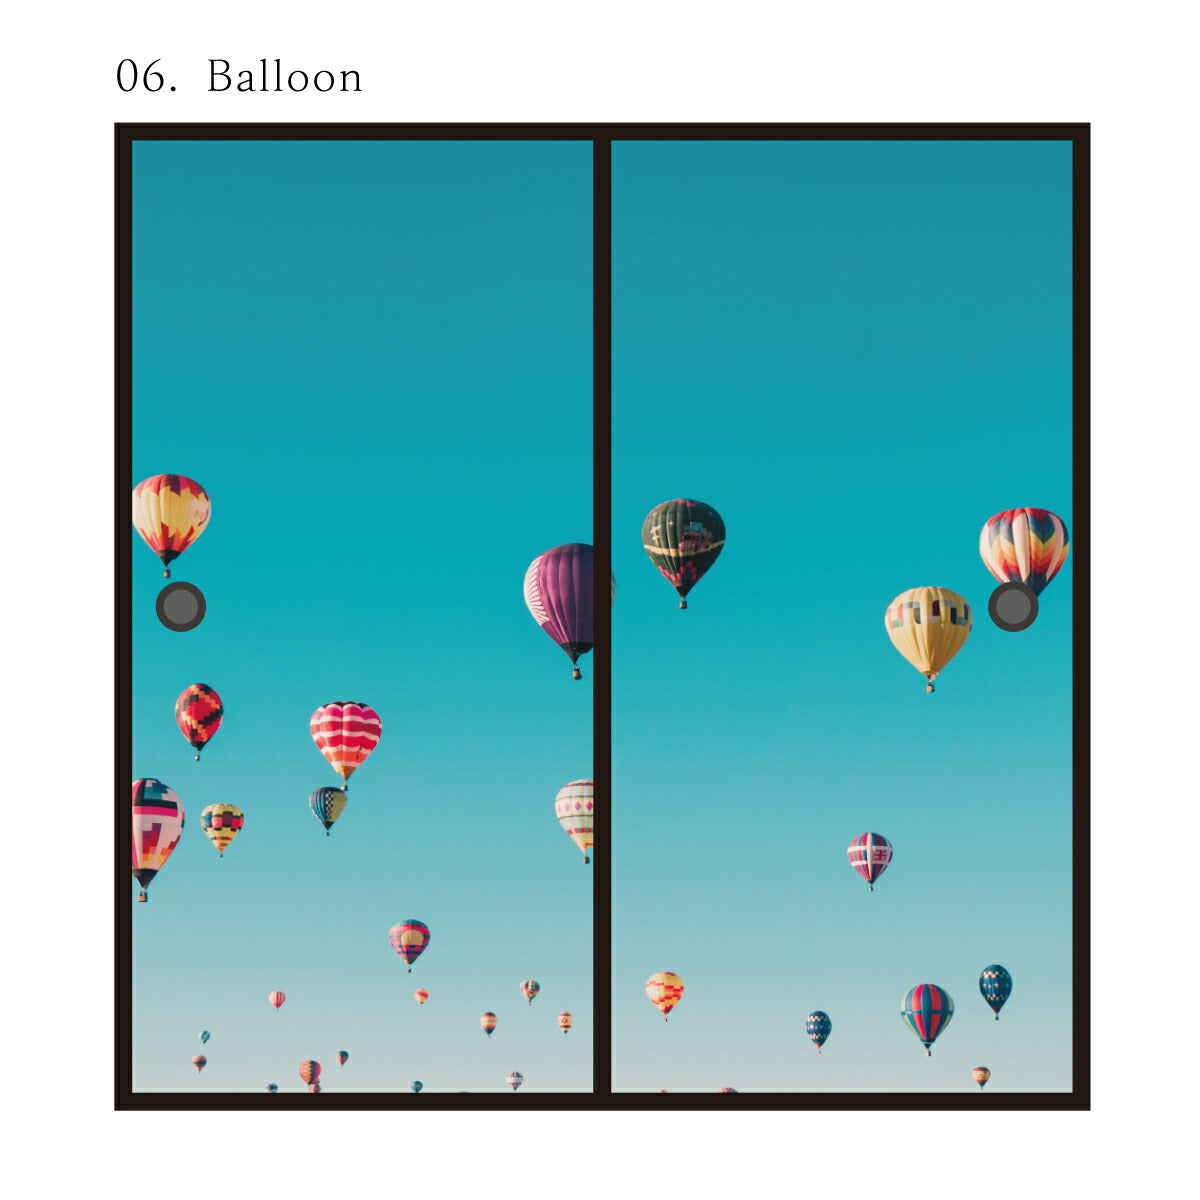 ふすま紙 空もよう襖紙 sky-06F Balloon 91cm×182cm 2枚1組 水で貼るタイプ アサヒペン<br>おしゃれ 洋風 気球 空 青空 柄 アート デザイン 再湿 ふすま<br>